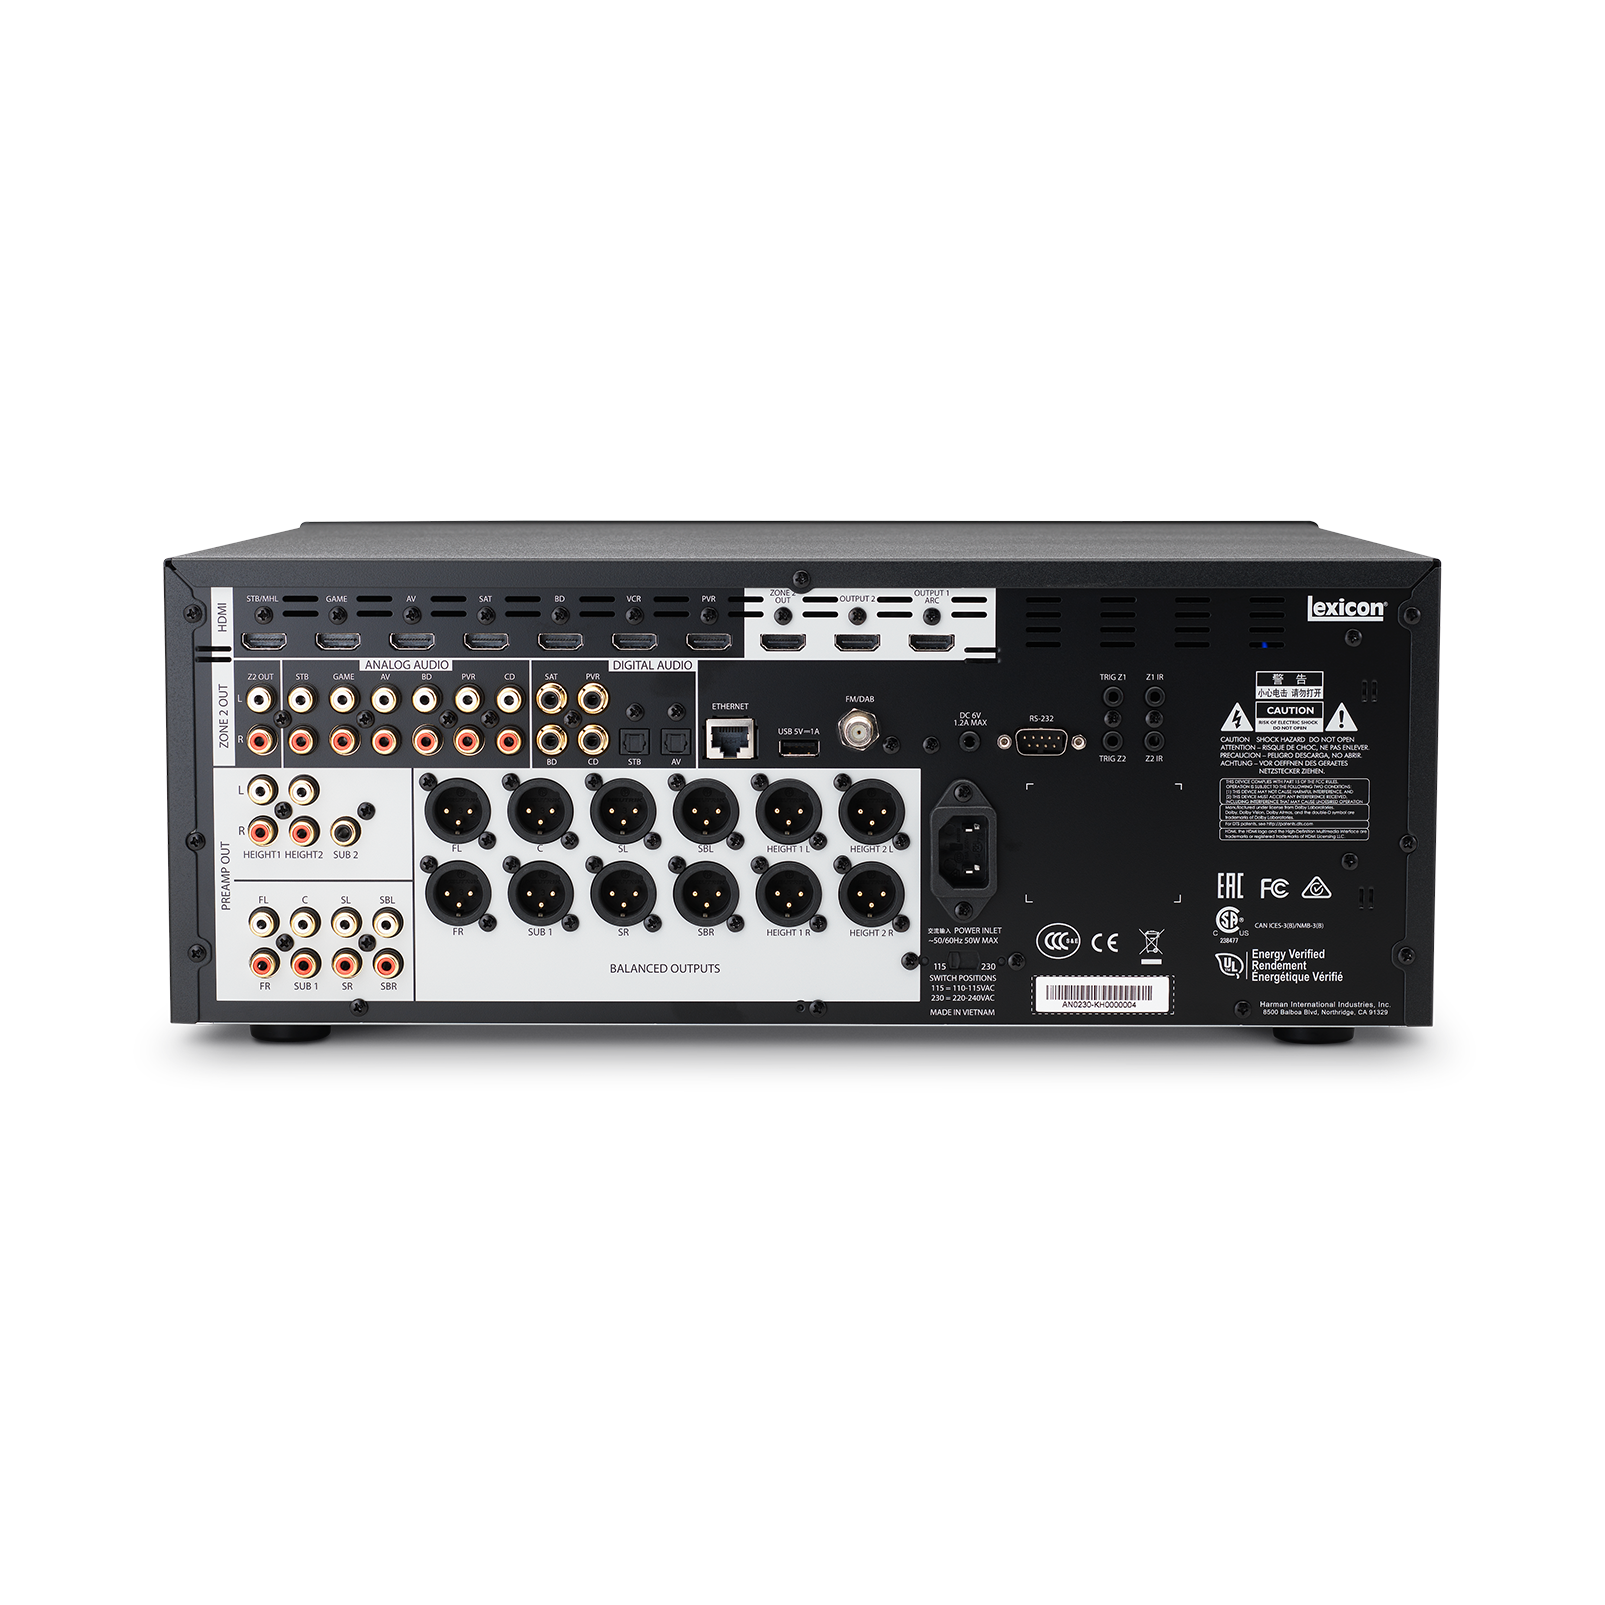 Lexicon MC-10 - Black - Immersive Surround Sound AV Processor - Back